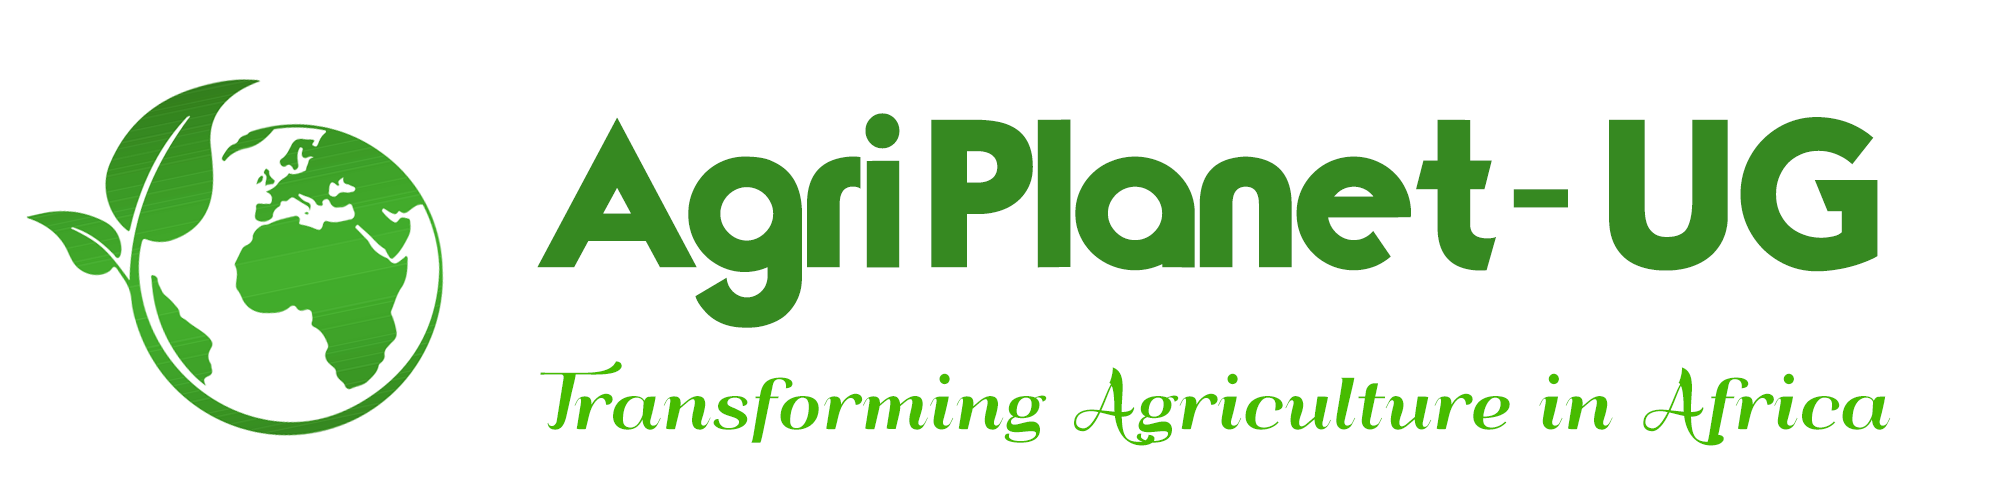 Agri Planet Uganda logo